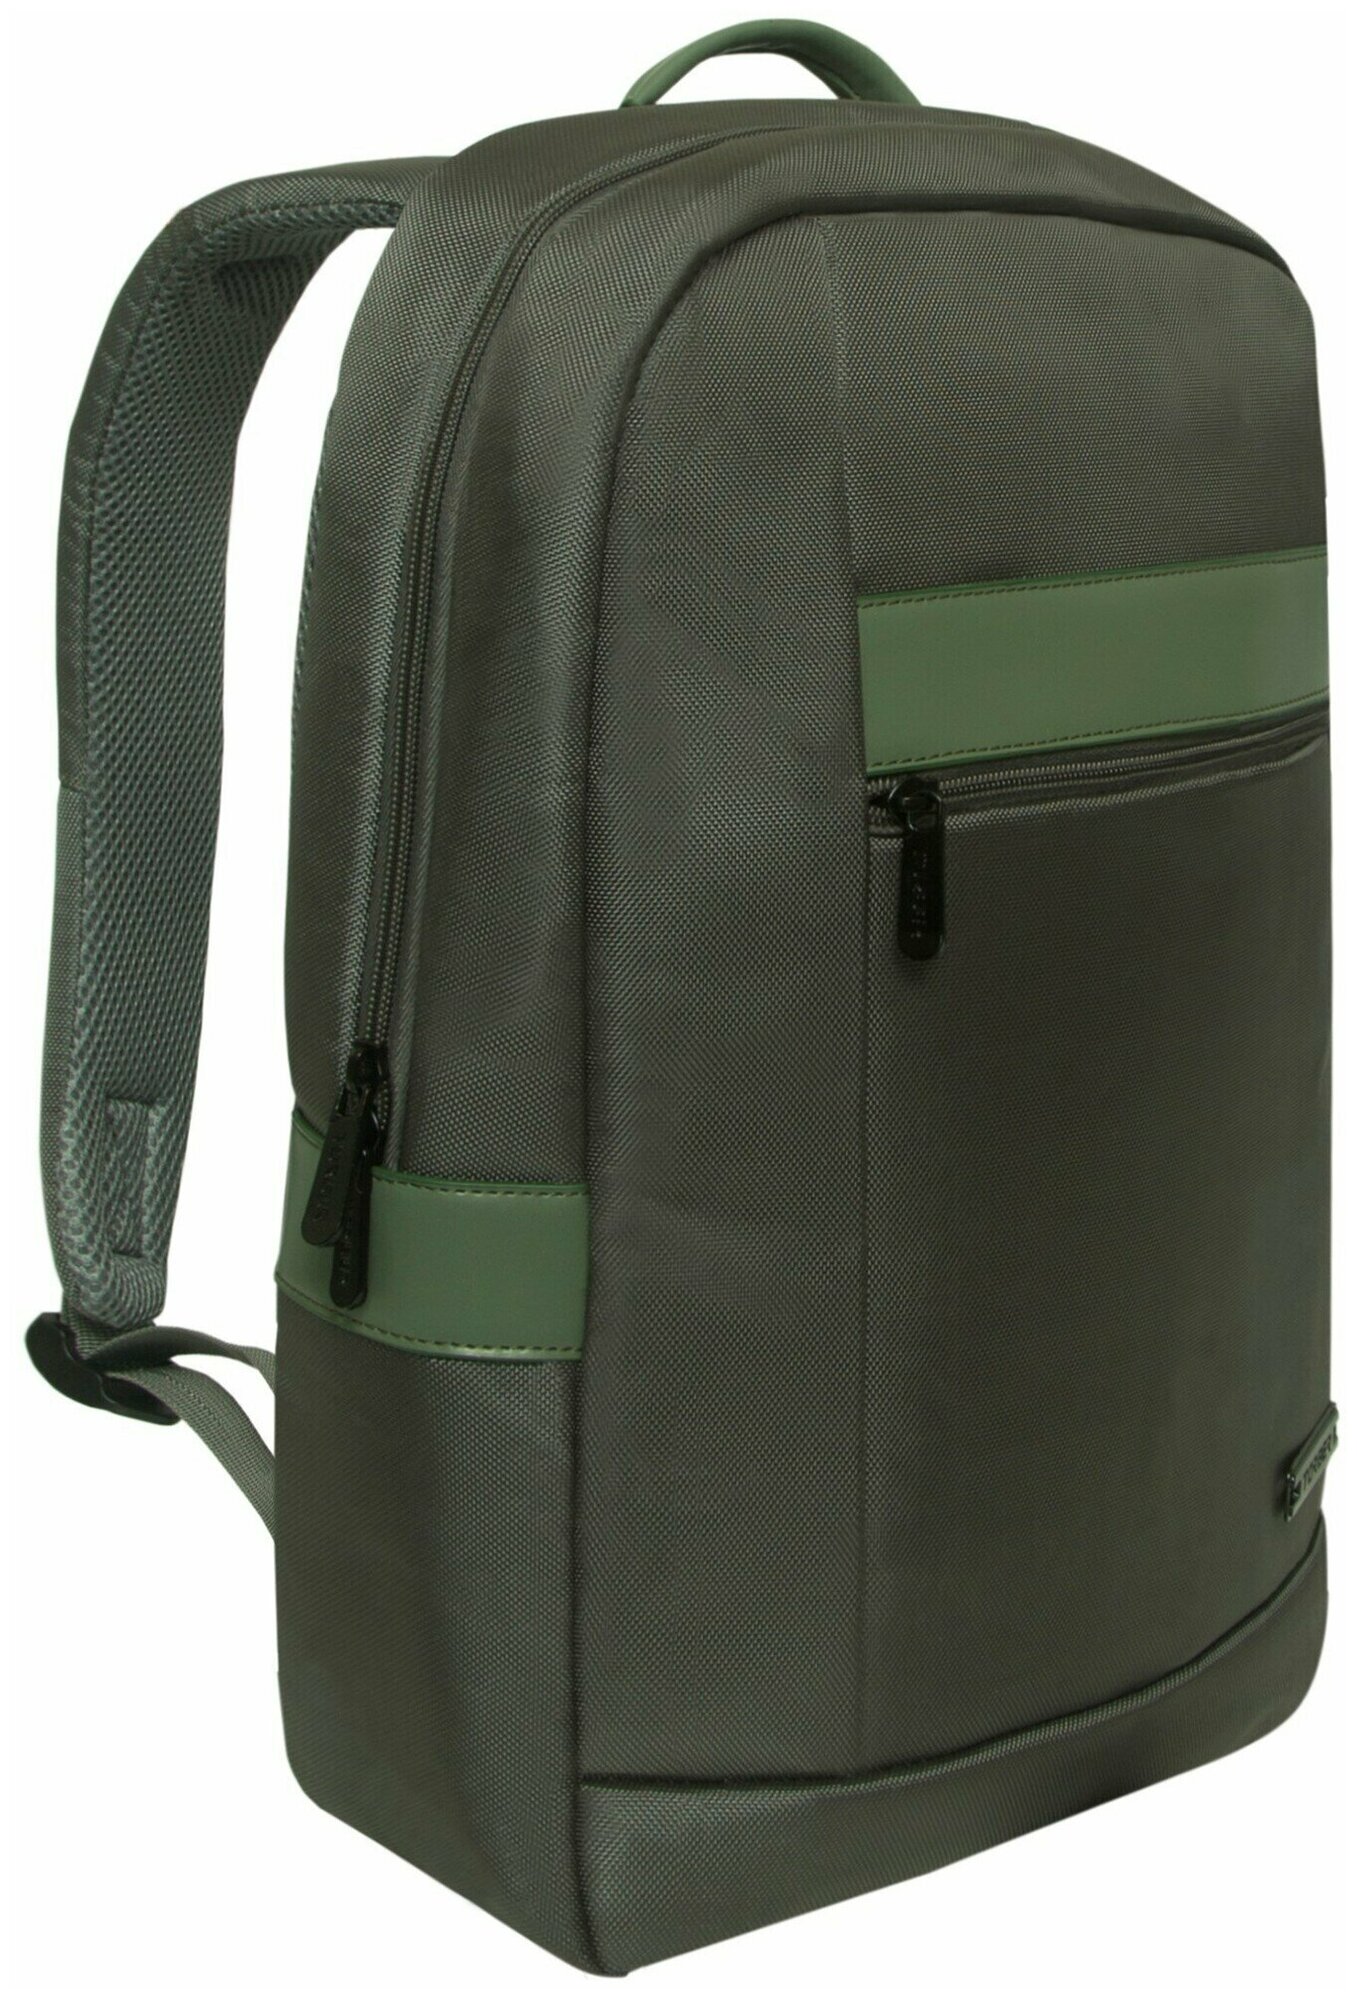 Деловой рюкзак TORBER VECTOR T7925-GRE с отделением для ноутбука 15", cеро-зеленый, полиэстер 840D, 44 х 30 x 9,5 см, 13,8 л